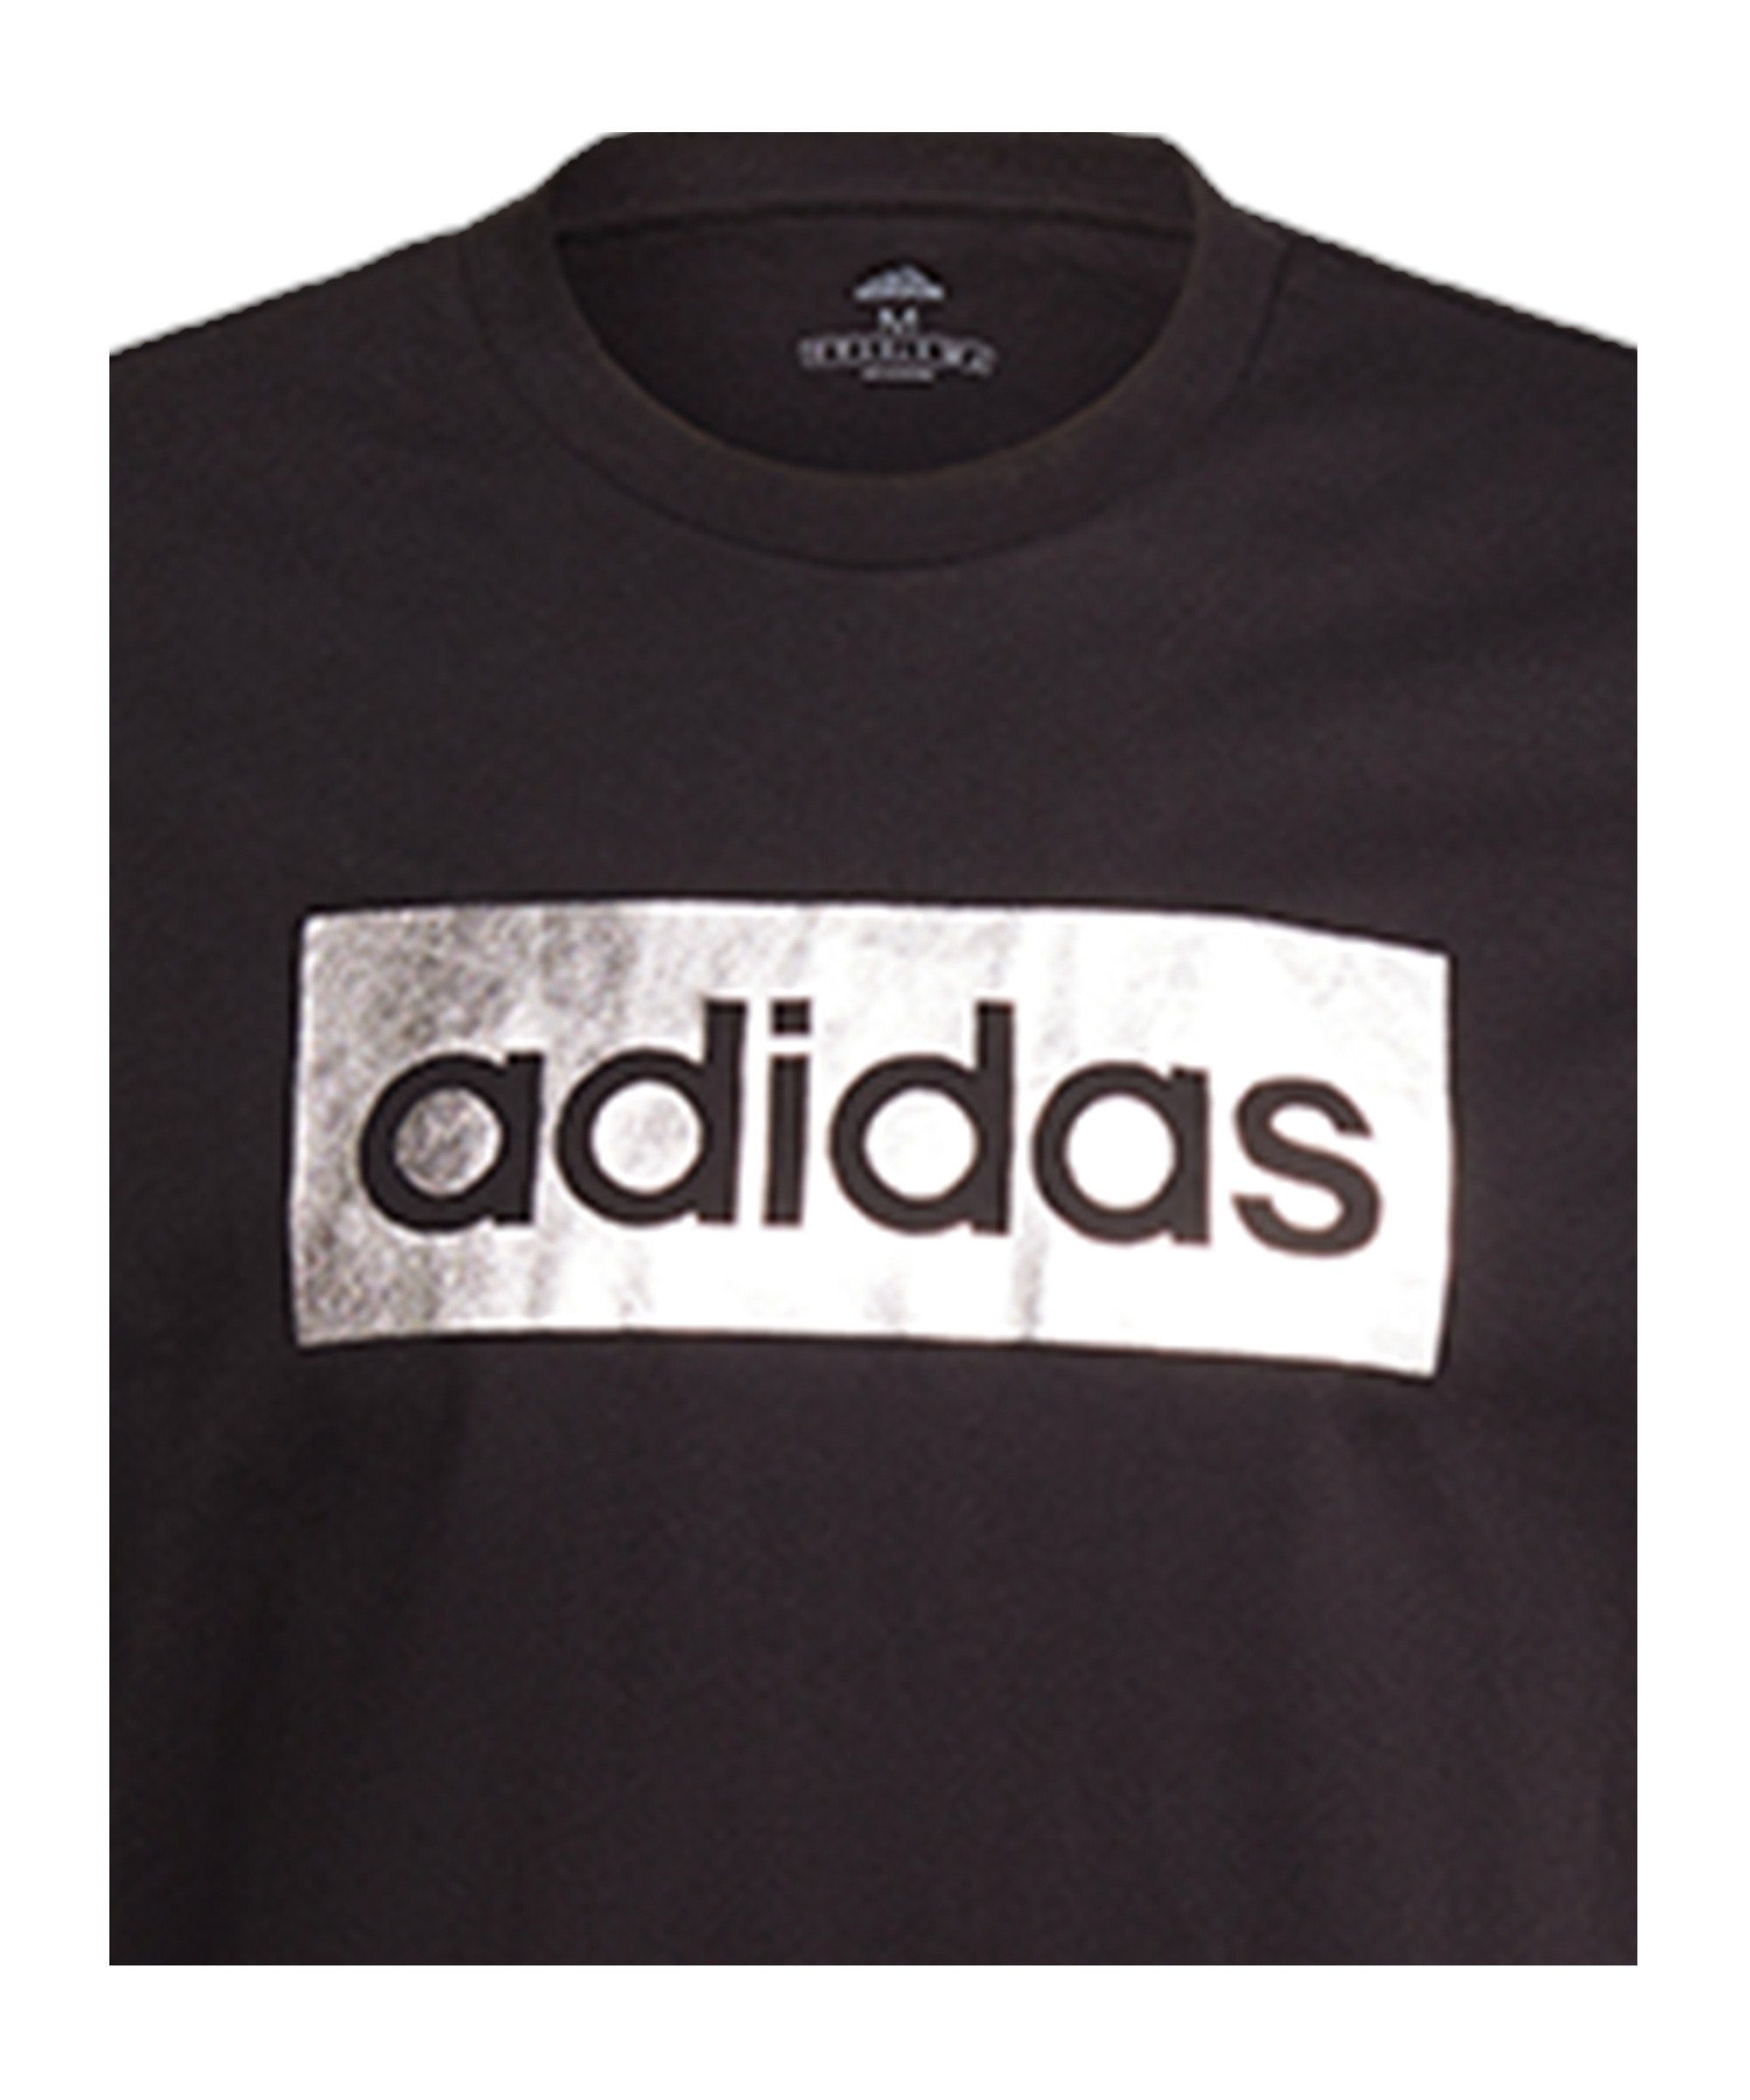 adidas Performance T-Shirt Foil default Box T-Shirt schwarzsilber